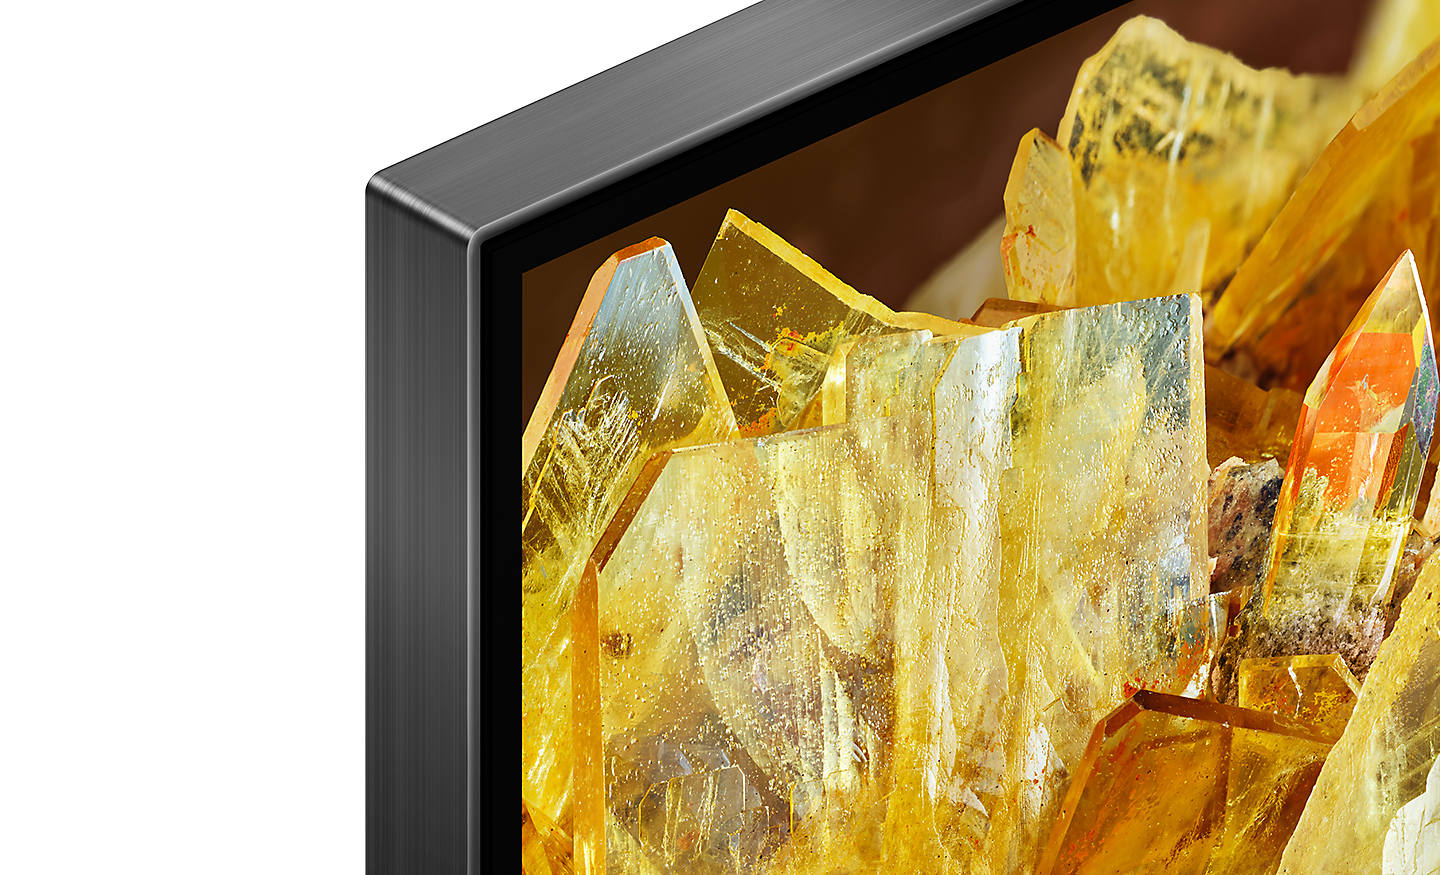 Angolo del TV che mostra cristalli d'oro sullo schermo